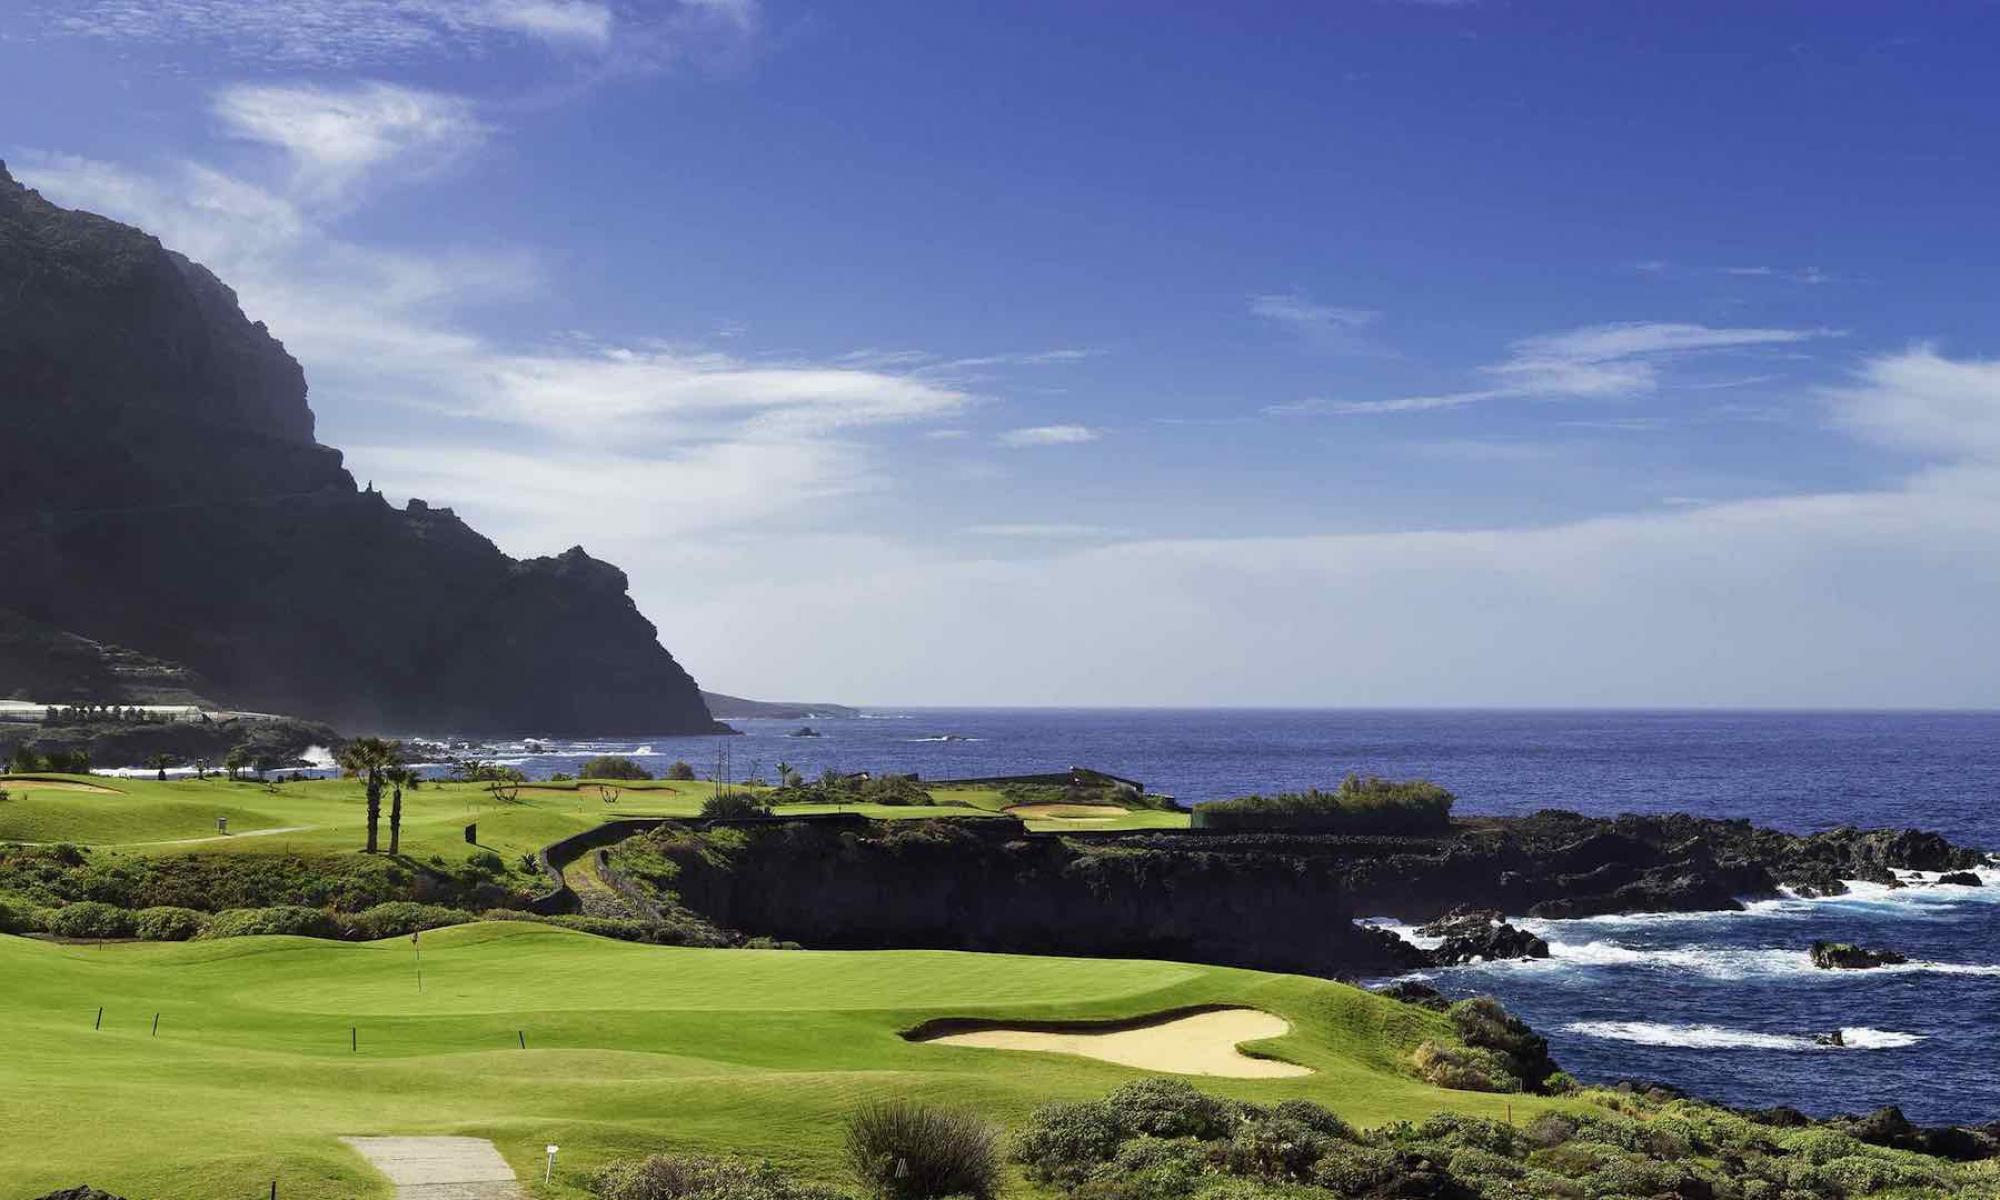 The Buenavista Golf Course's impressive golf course within brilliant Tenerife.